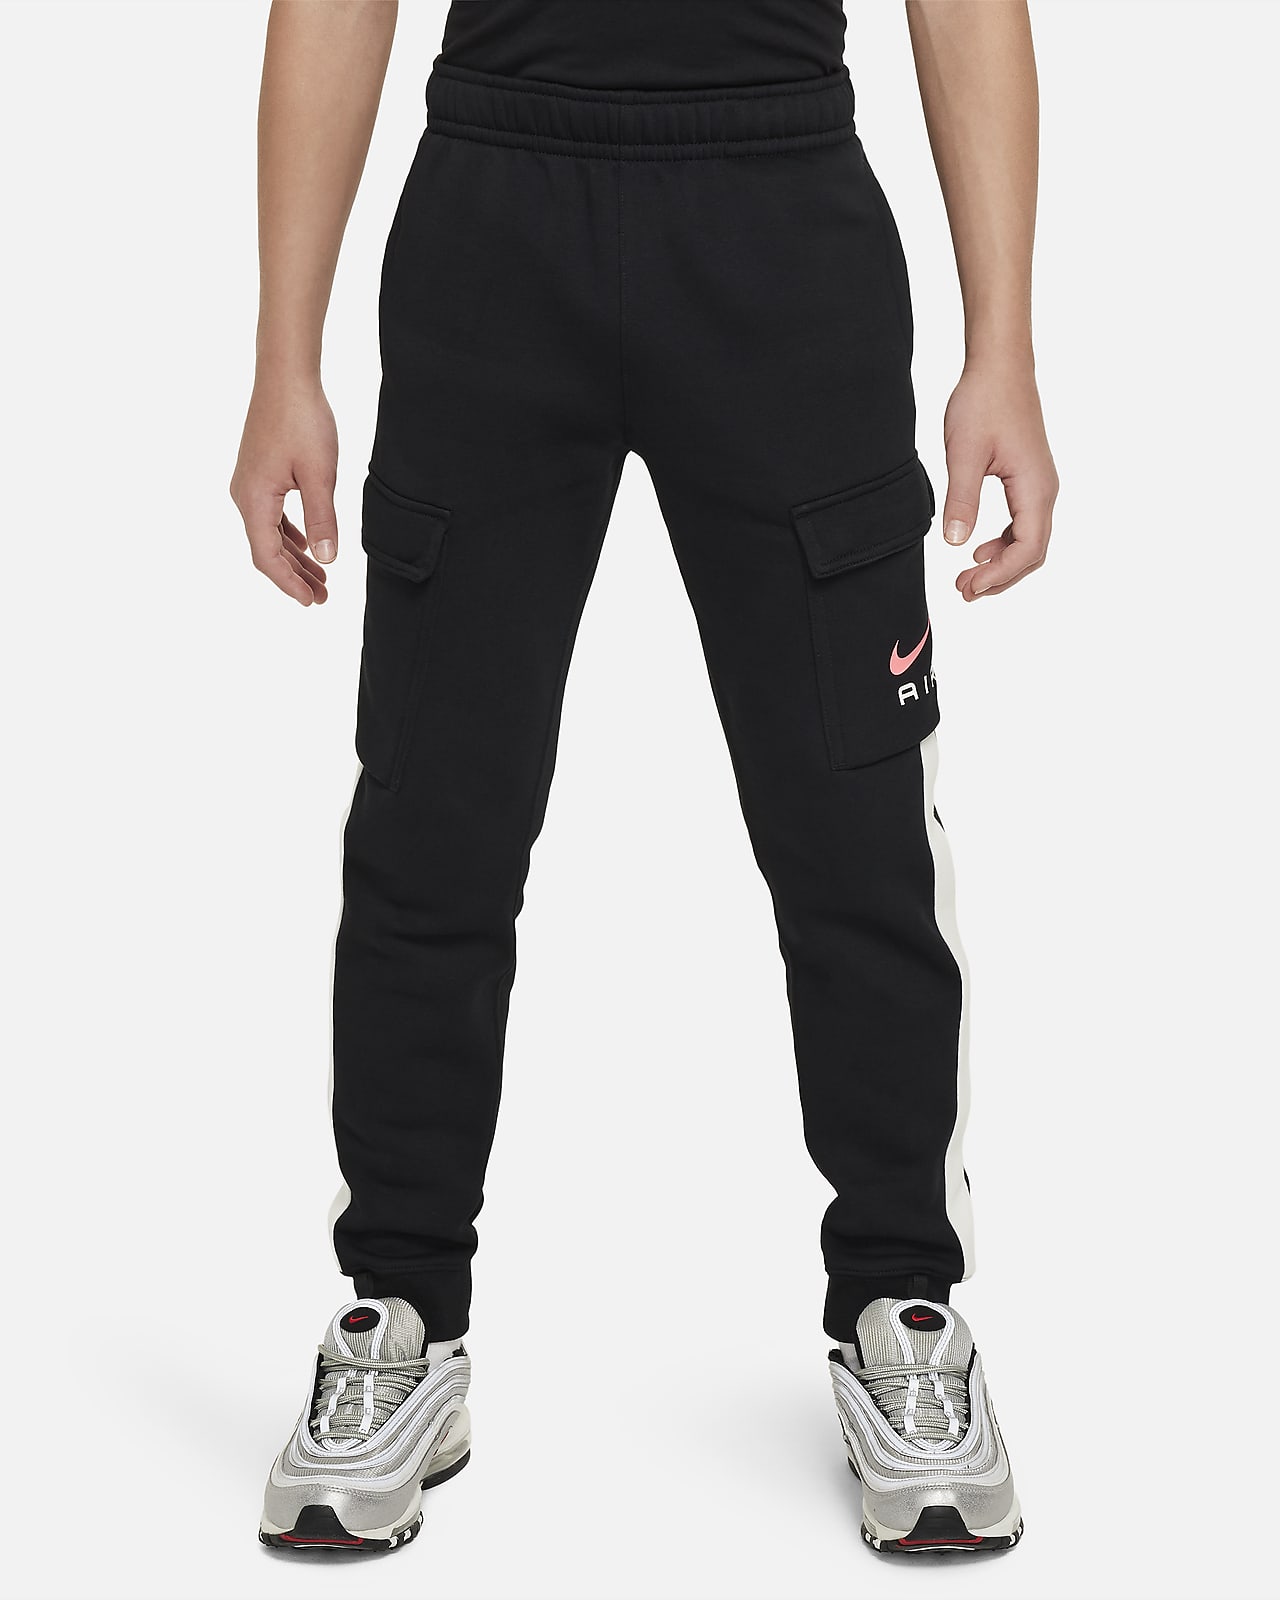 Nike Air Pantalón cargo de tejido Fleece - Niño/a